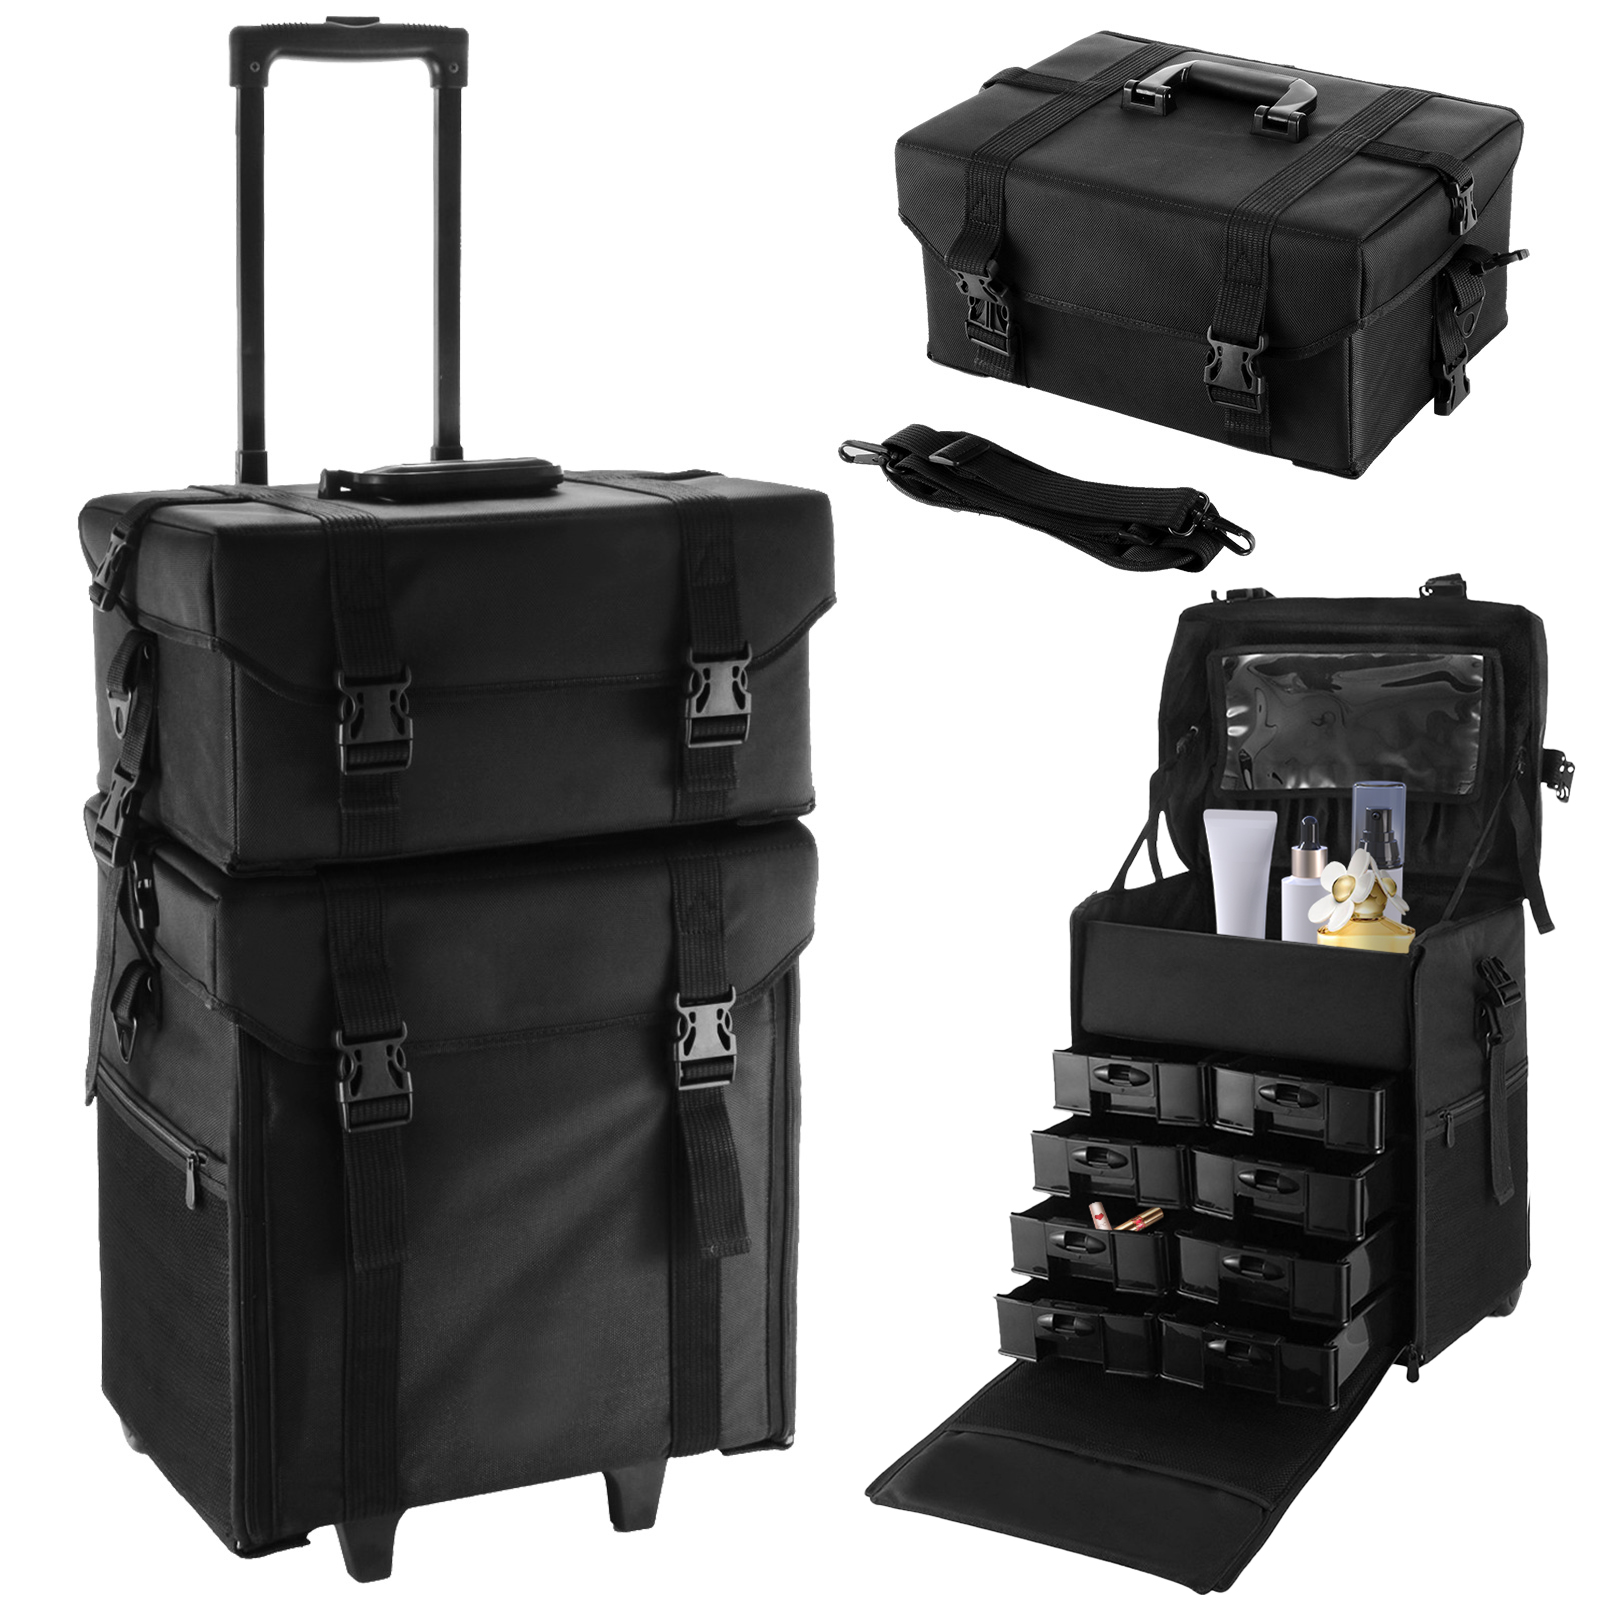 VEVOR VEVOR 2 in 1 Makeup Case Box Rolling Trolley Bag Black Professional Makeup Case Organizer Beauty Case on Wheels | VEVOR EU